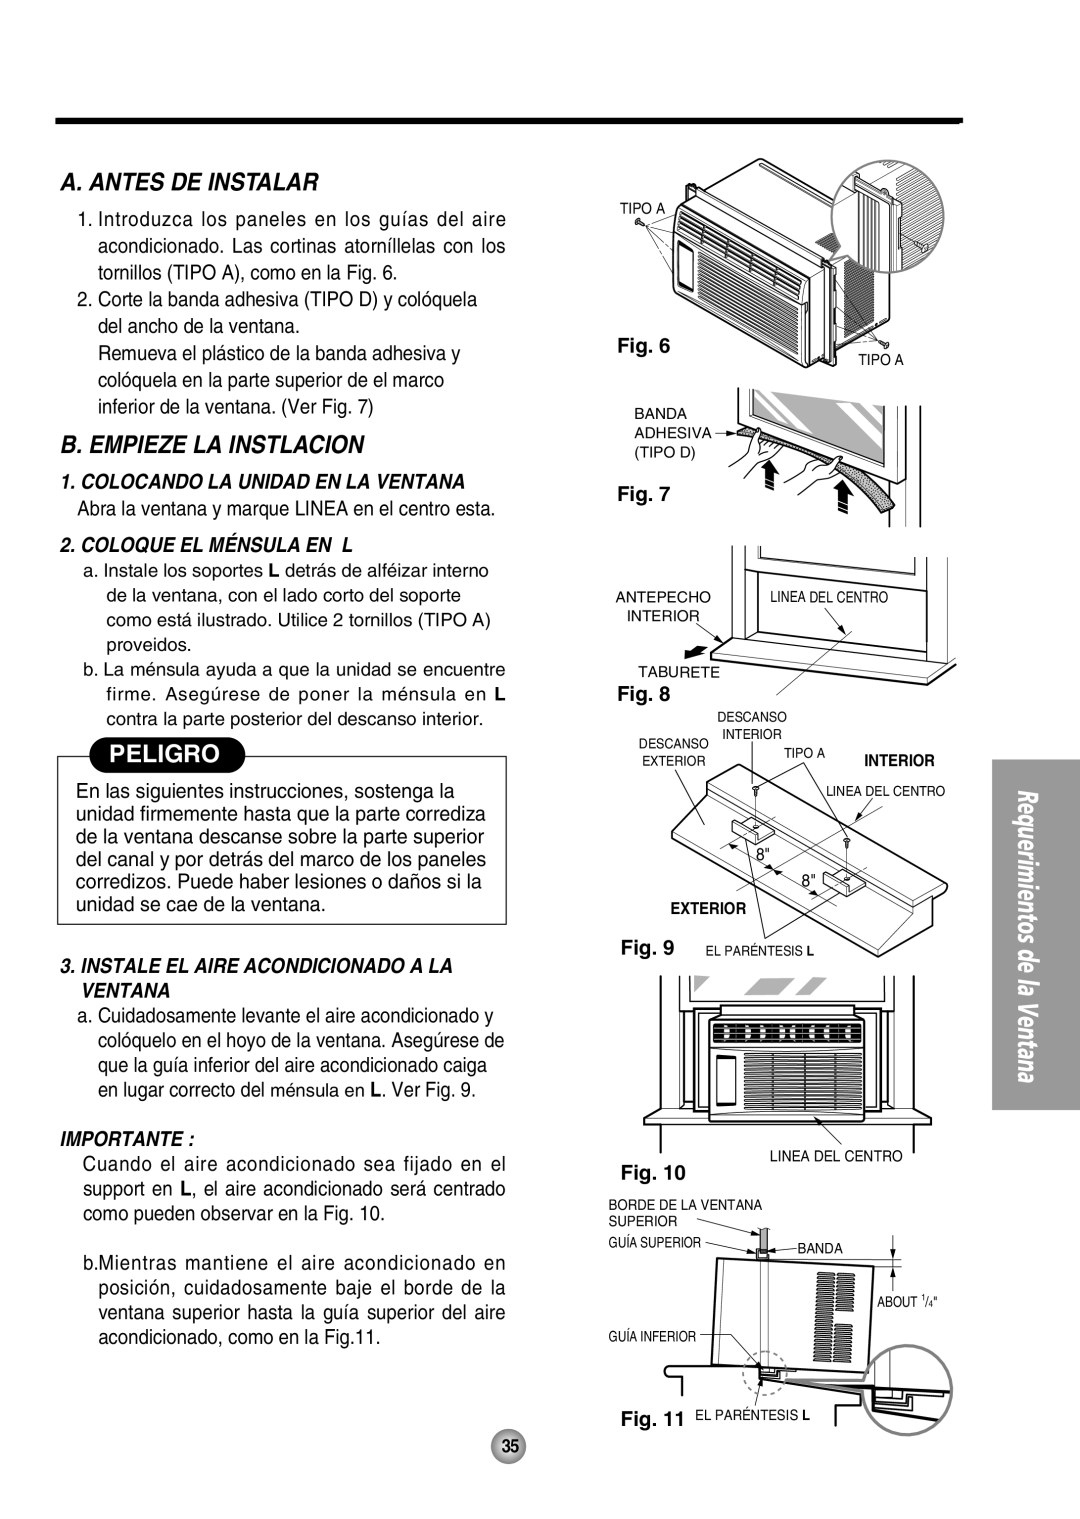 Panasonic CW-XC54HK manual A. Antes De Instalar, B. Empieze La Instlacion, Peligro, Coloque El Ménsula En L, Importante 